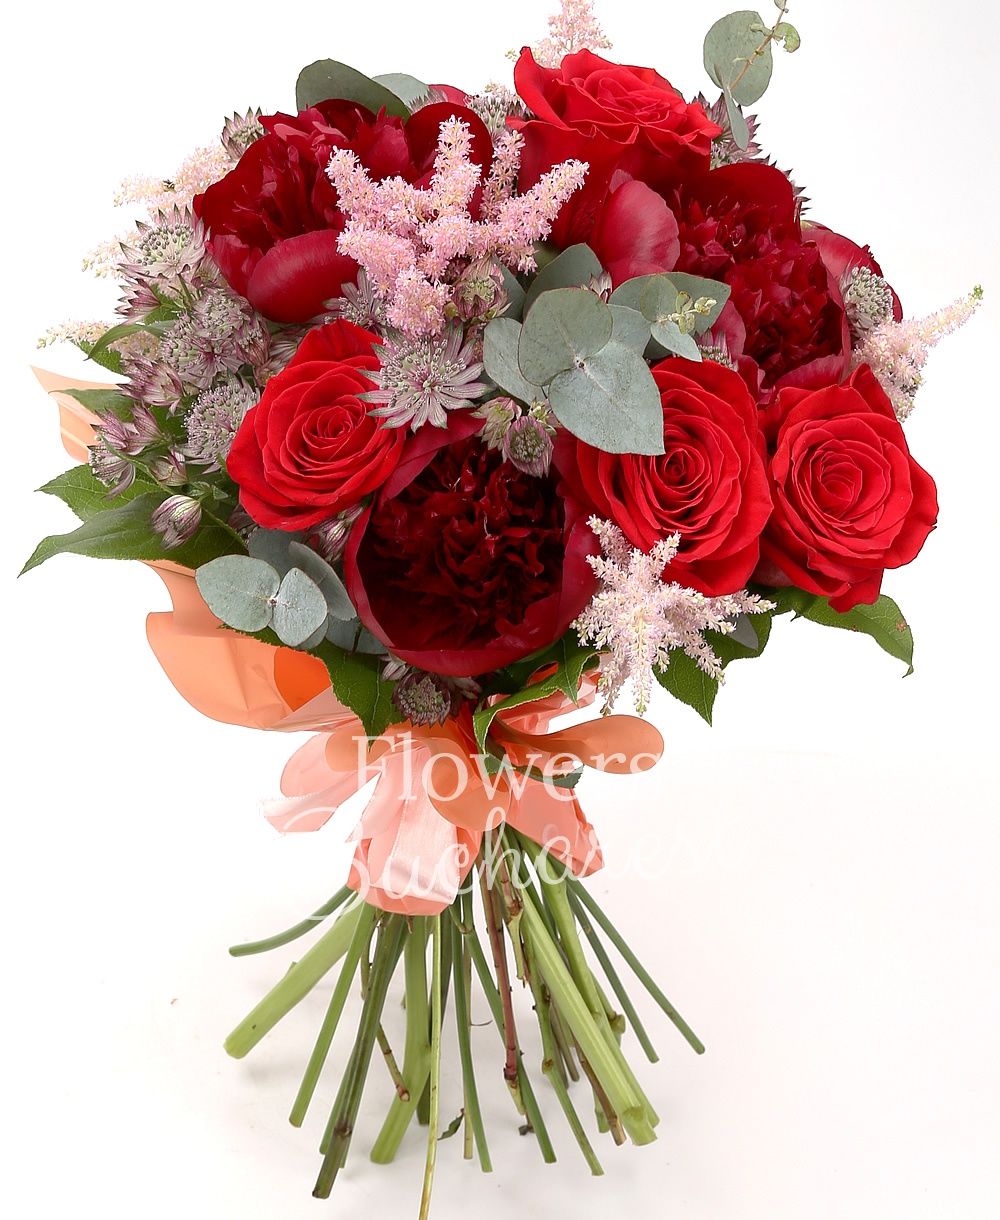 5 garnet peonies, 7 red roses, 5 pink astilbe, 10 red astranția, greenery